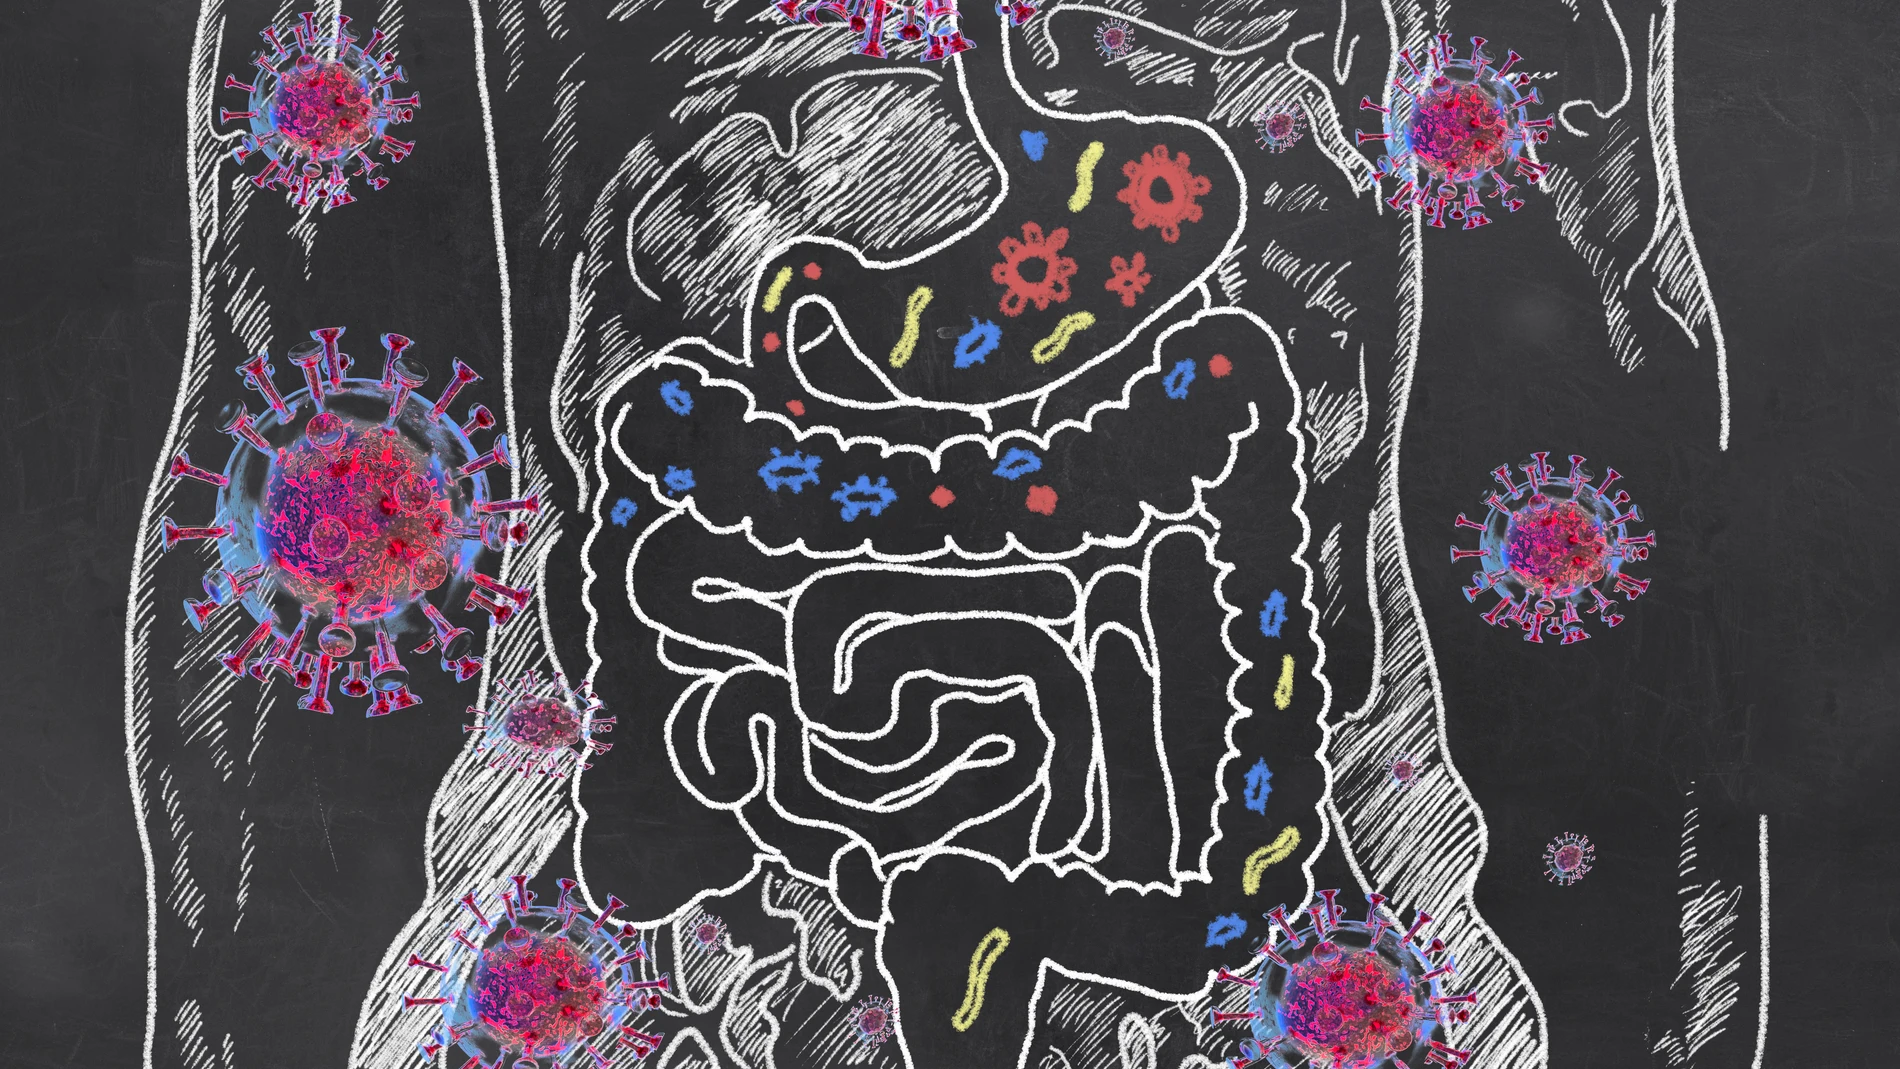 La composición del microbioma intestinal puede estar detrás del riesgo aumentado de desarrollar covid prolongado muchos meses después de la infección